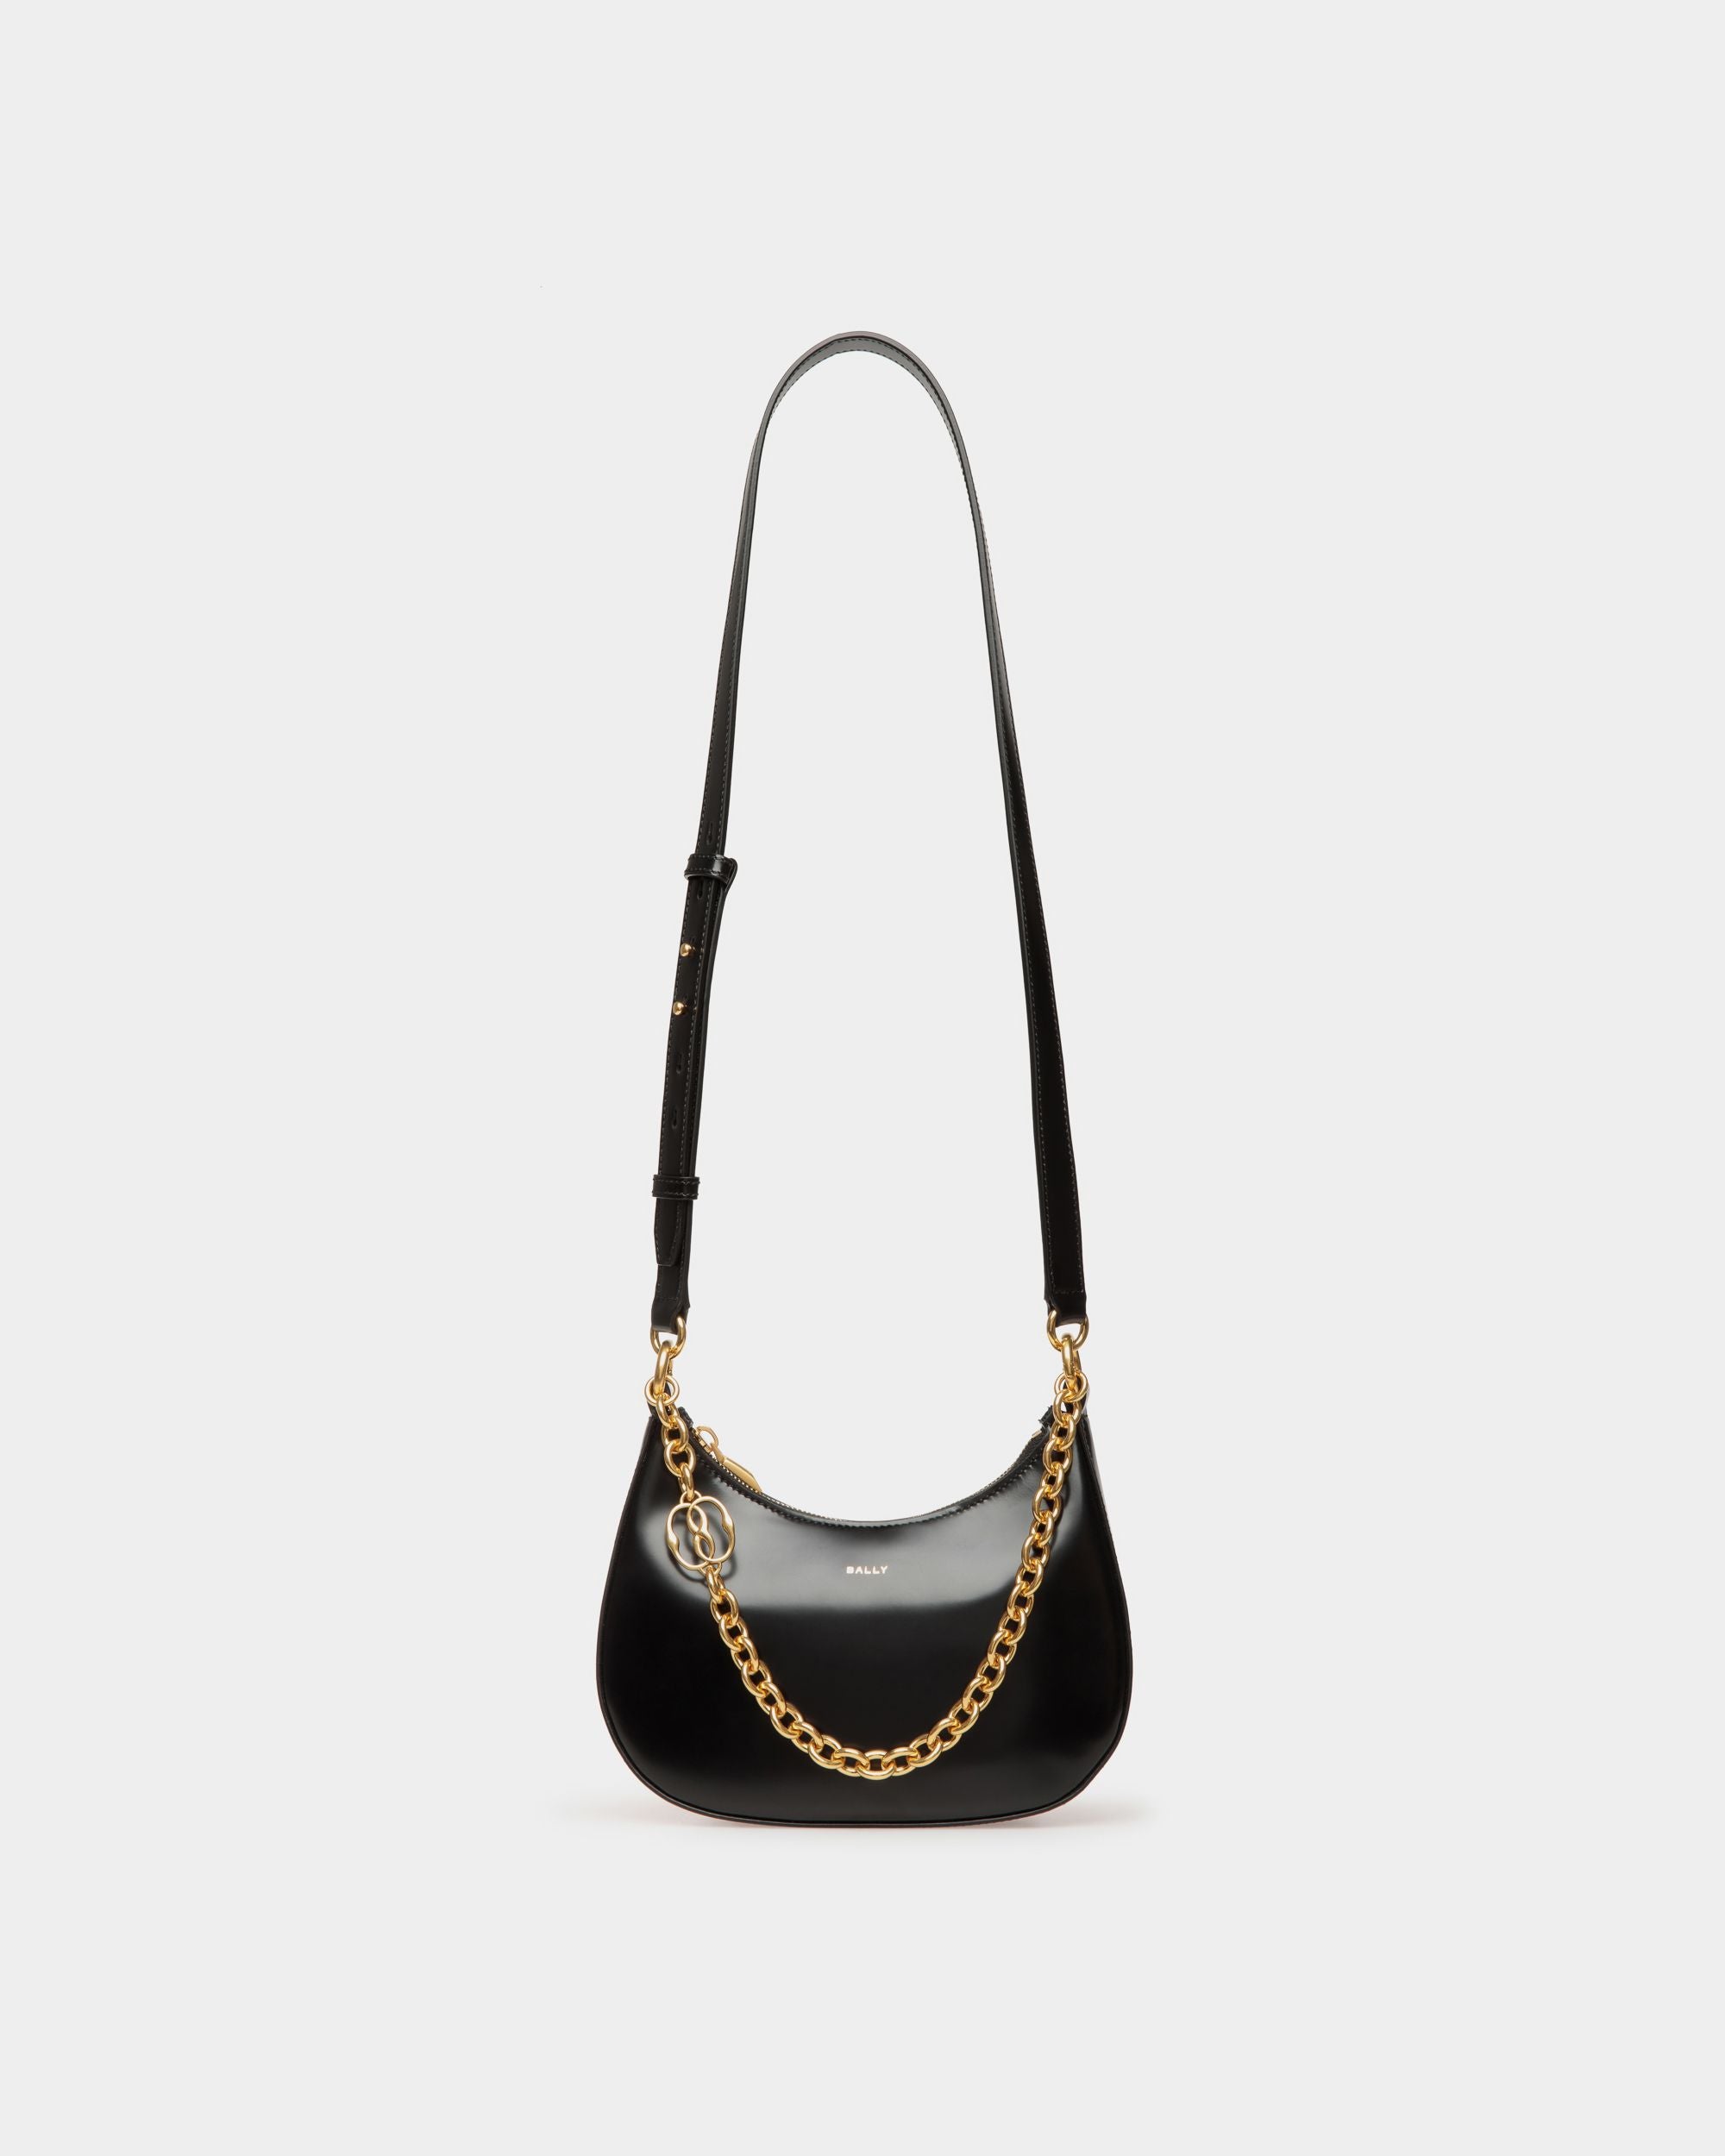 Emblem | Mini sac à bandoulière pour femme en cuir brossé noir | Bally | Still Life Devant